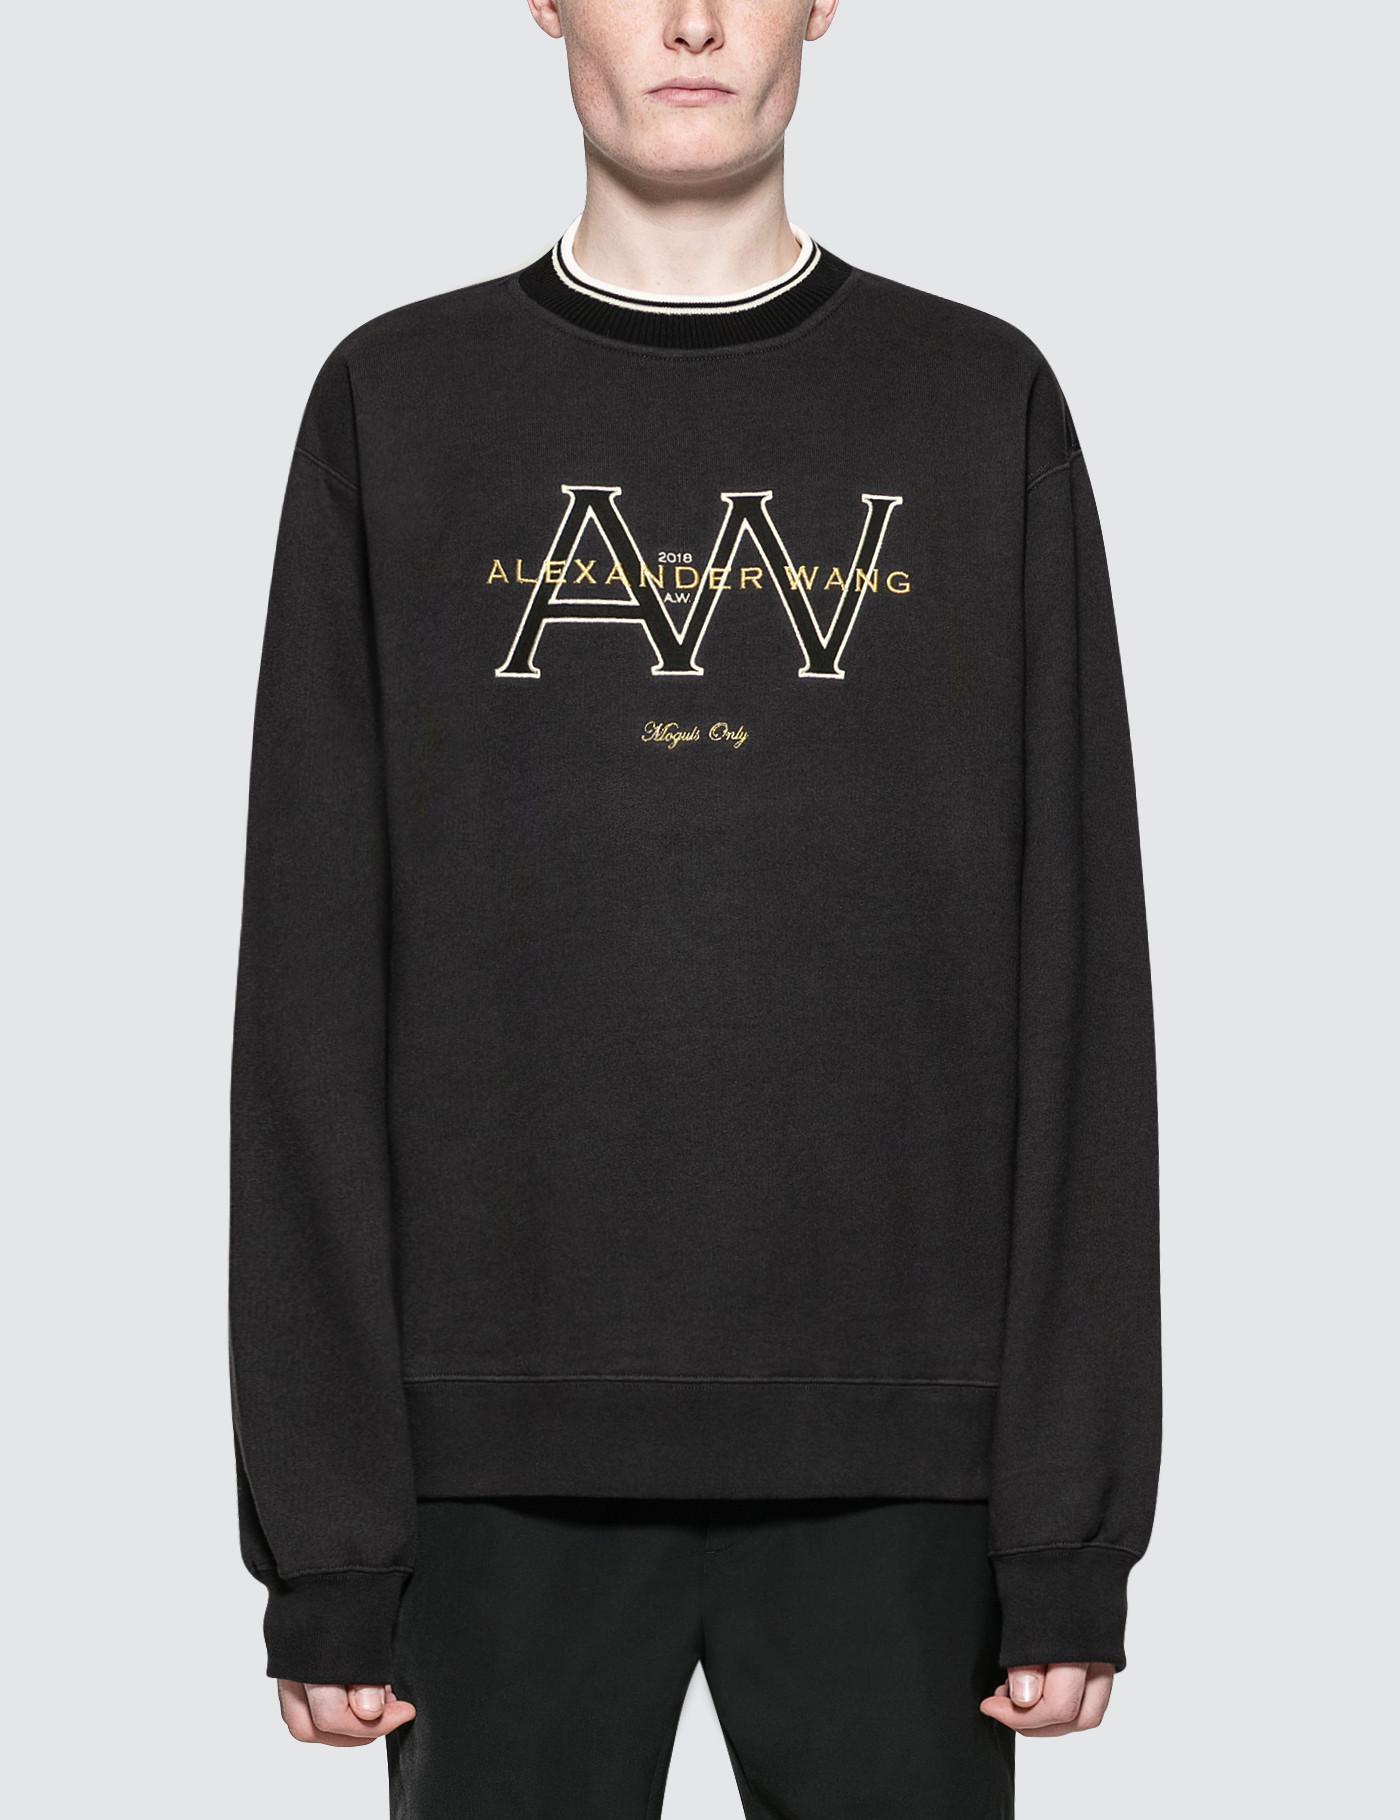 Alexander Wang Sweatshirt in Faded Black (White) for Men - Lyst